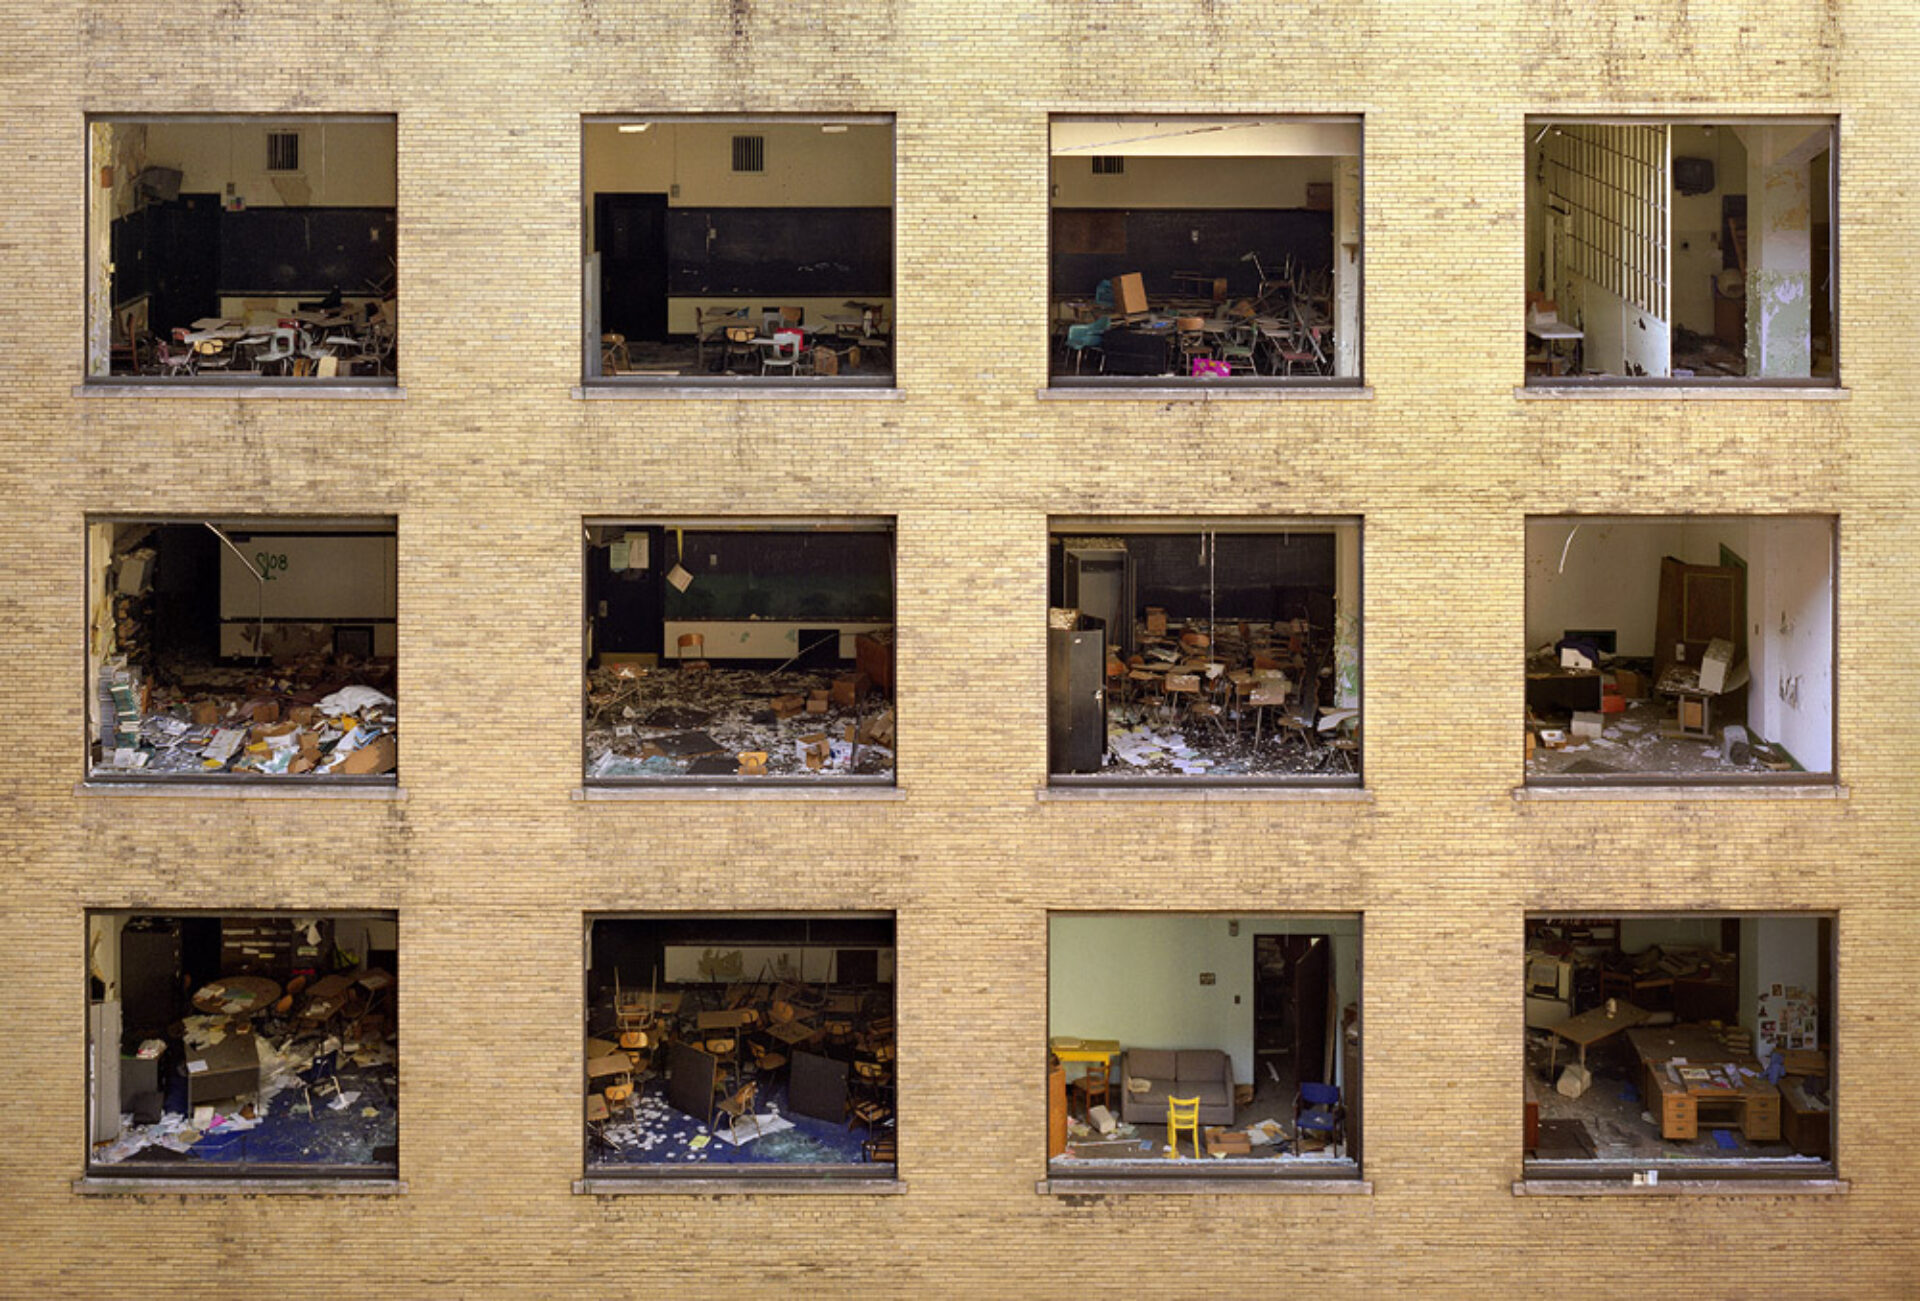 Courtyard, Cass Technical High School, 2008, tirée de la série « The Ruins of Detroit », © Yves Marchand et Romain Meffre